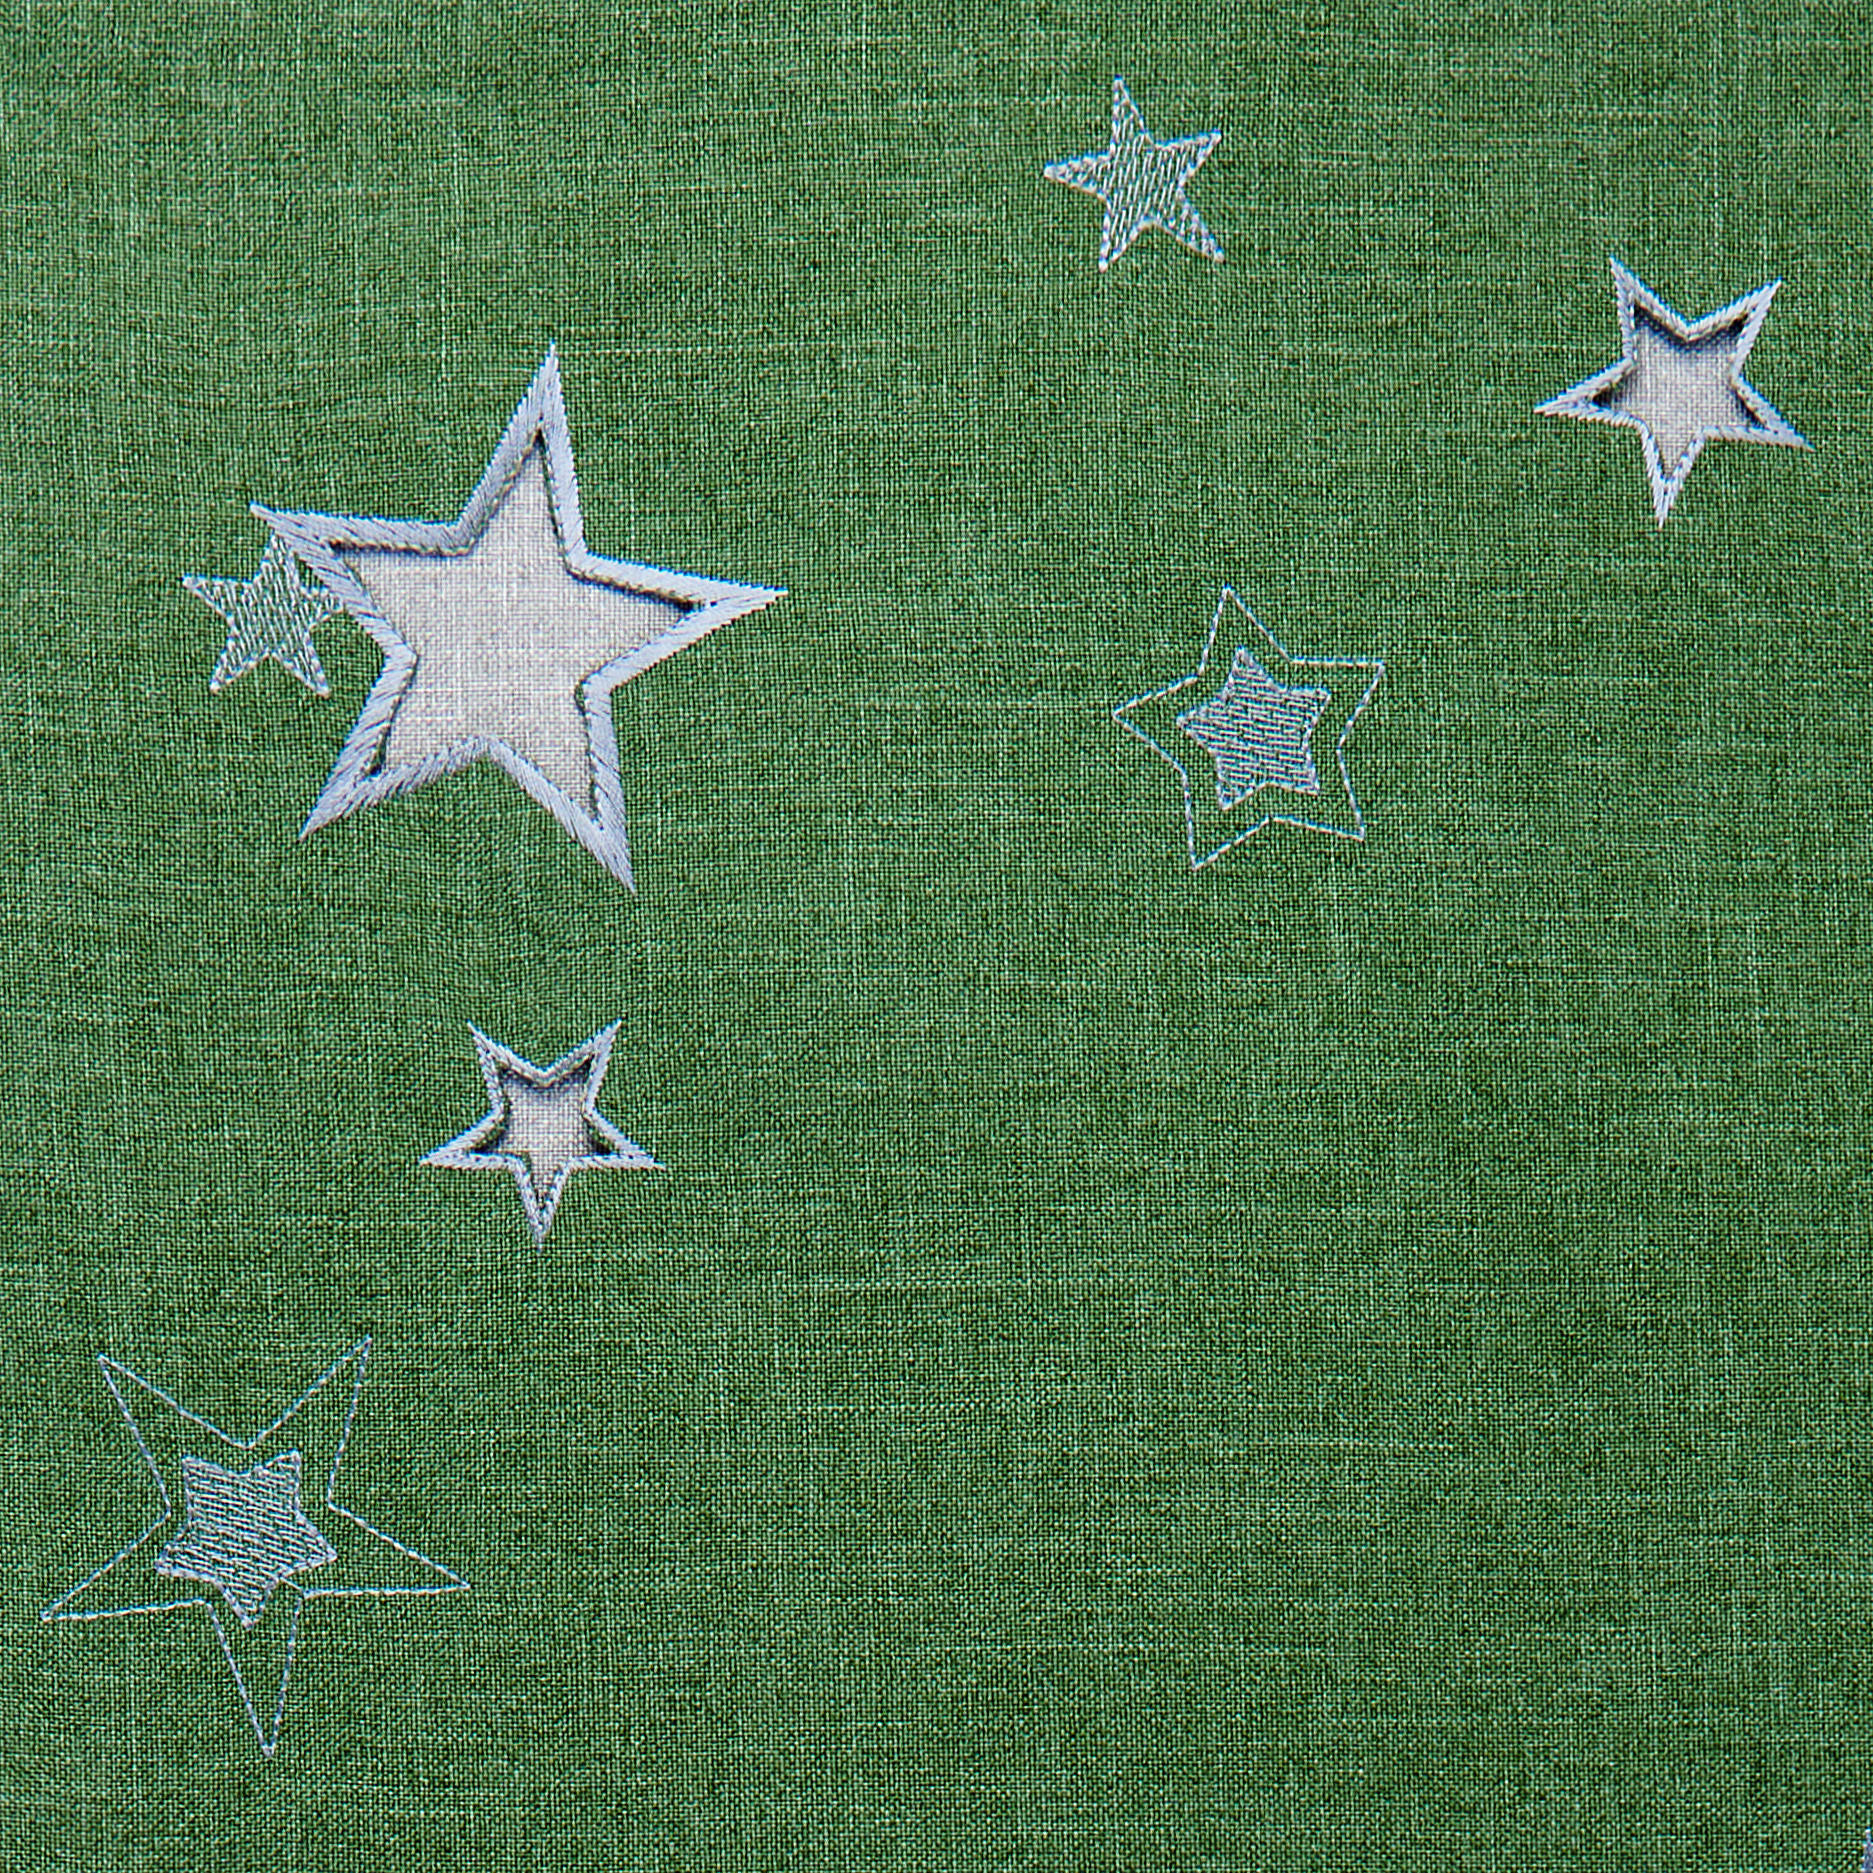 ÚZKY OBRUS, 40/25 cm, sivá, zelená - sivá/zelená, Basics, textil (40/25cm) - X-Mas